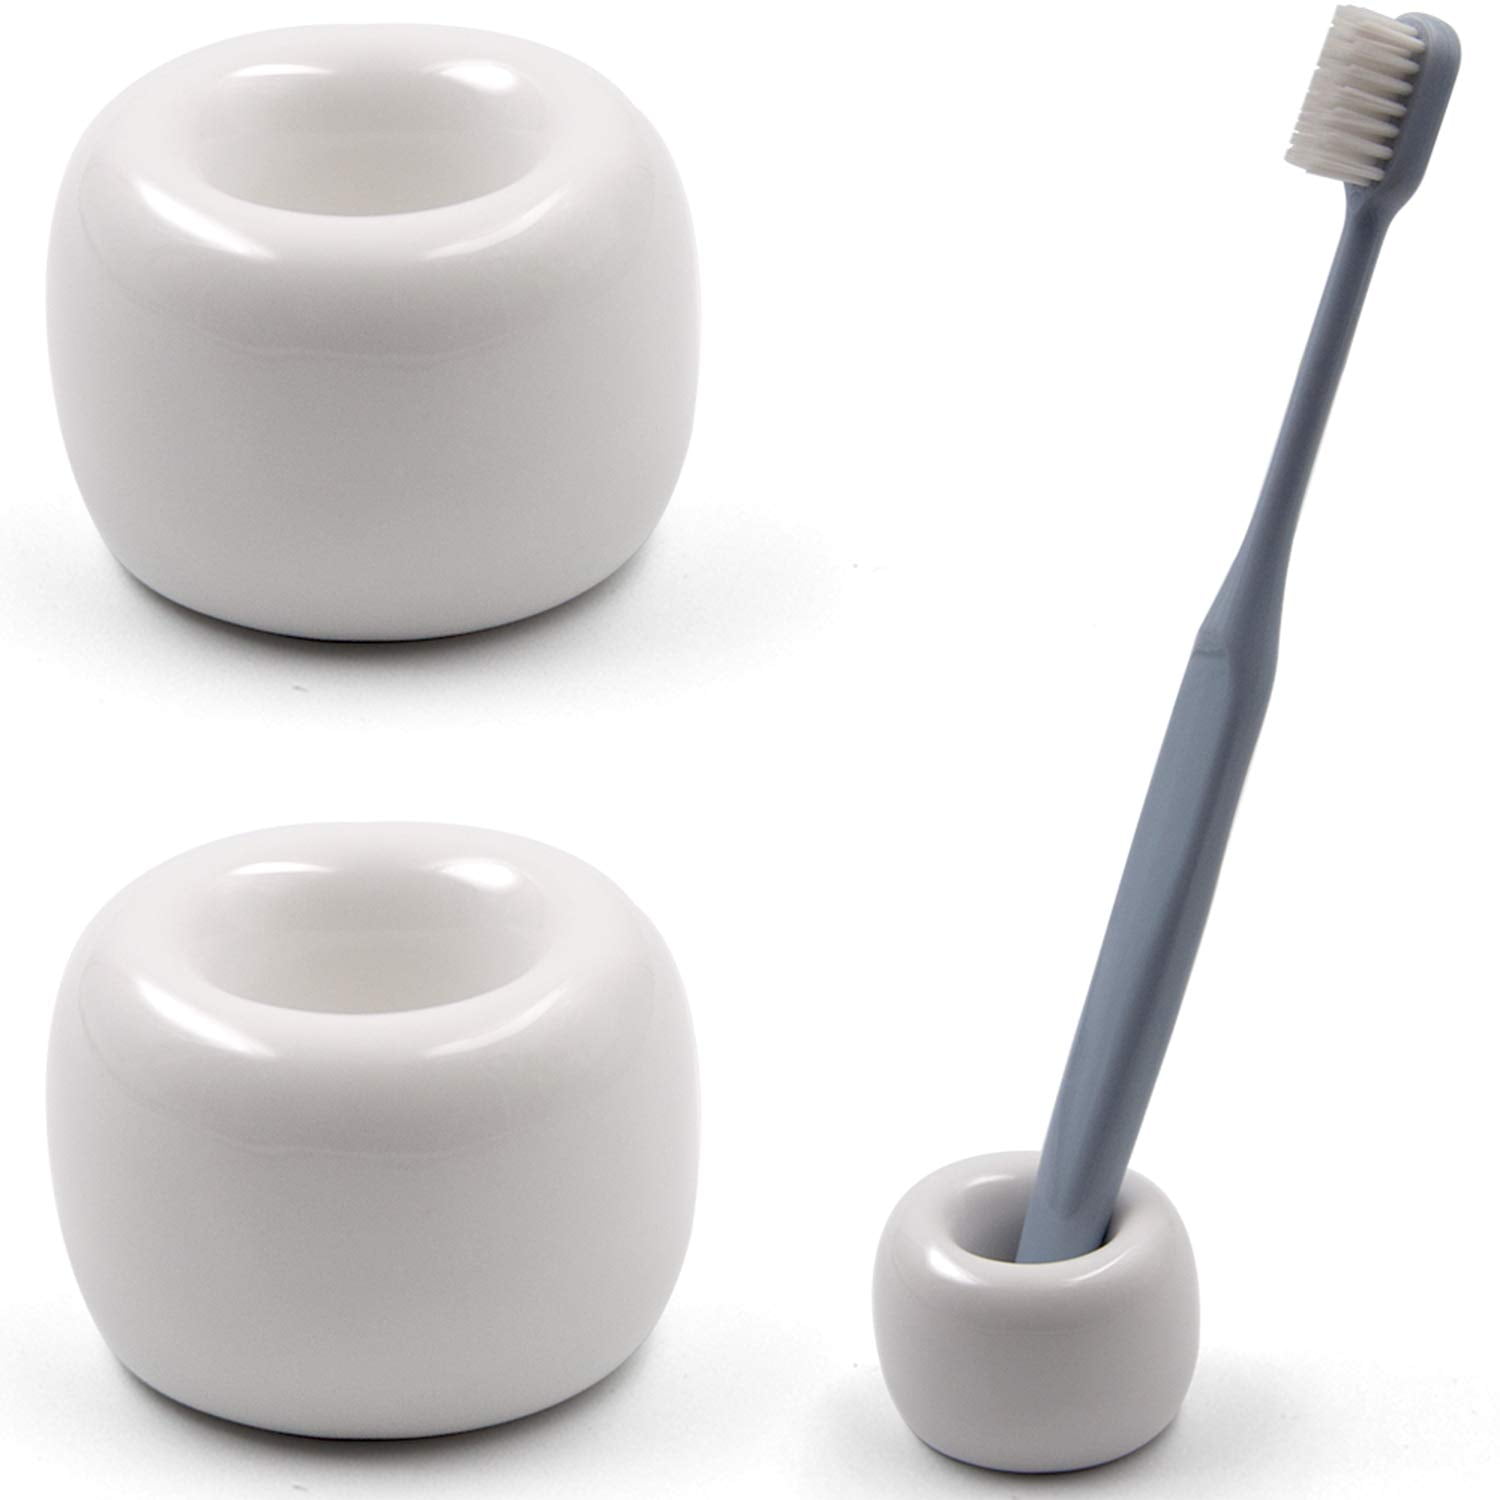 Ceramic Toothbrush Holder Handmade Mini Toothbrush Holder for Bathroom Decor LE 